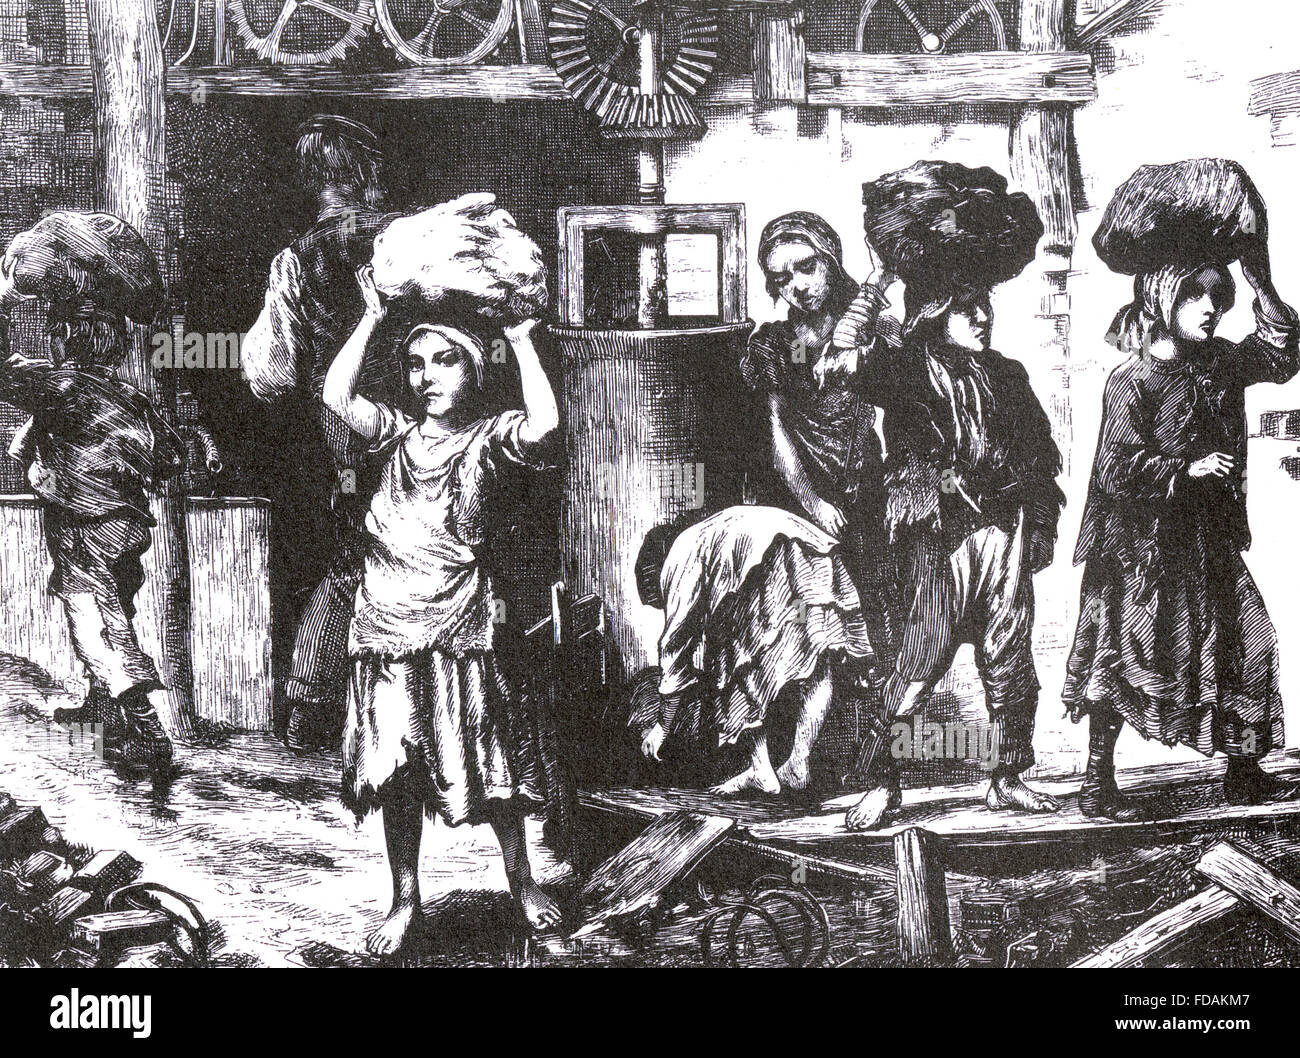 ZIEGELHERSTELLUNG AT ASHTON-unter-LYME, England im Jahre 1871. Kinder, die die komprimierten Tonklumpen, wie in George Smith-Broschüre "Der Schrei der Kinder aus der englischen Ziegeleien" beschrieben. Aus der Grafik 27. Mai 1871 Stockfoto